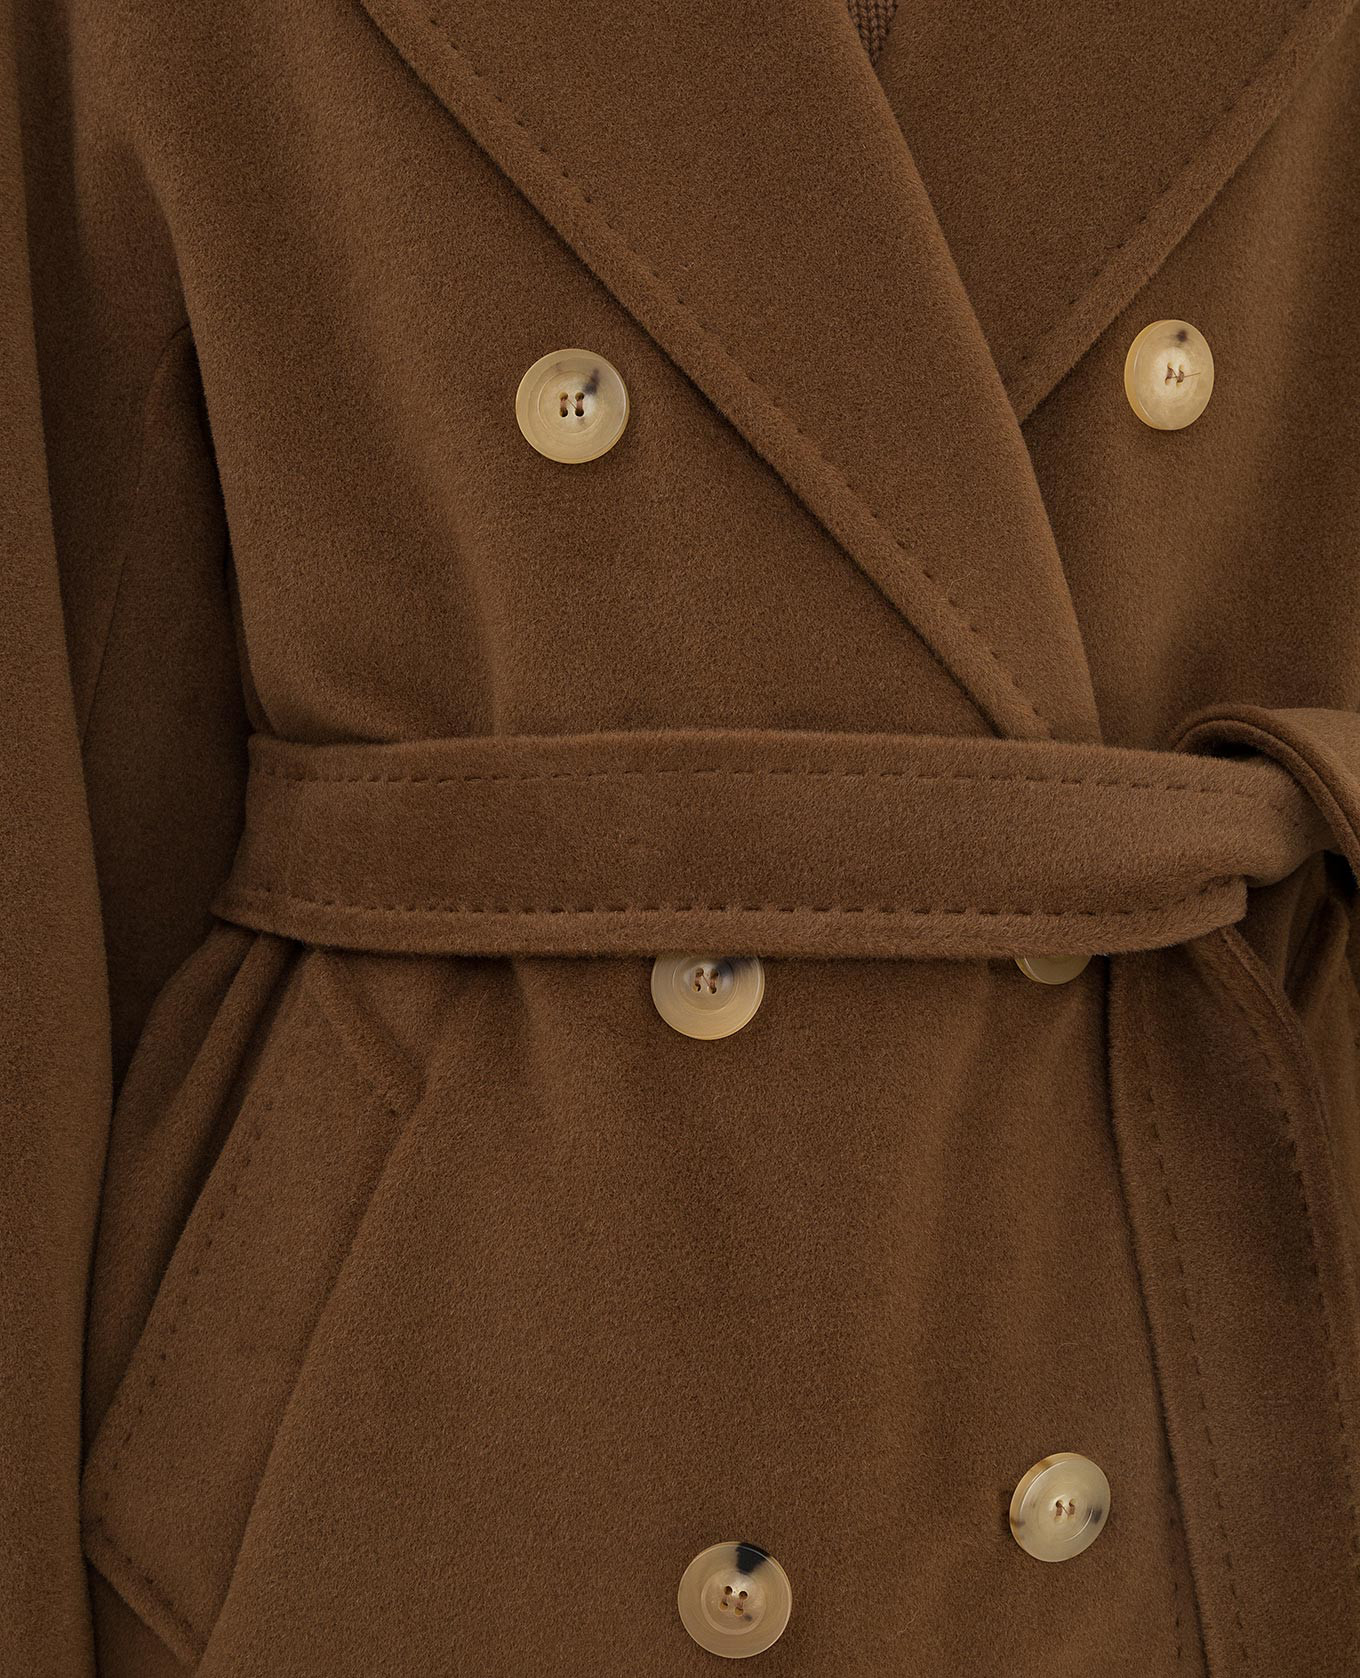 Max Mara Коричневое двубортное пальто Madame из шерсти и кашемира 3MADAME изображение 5